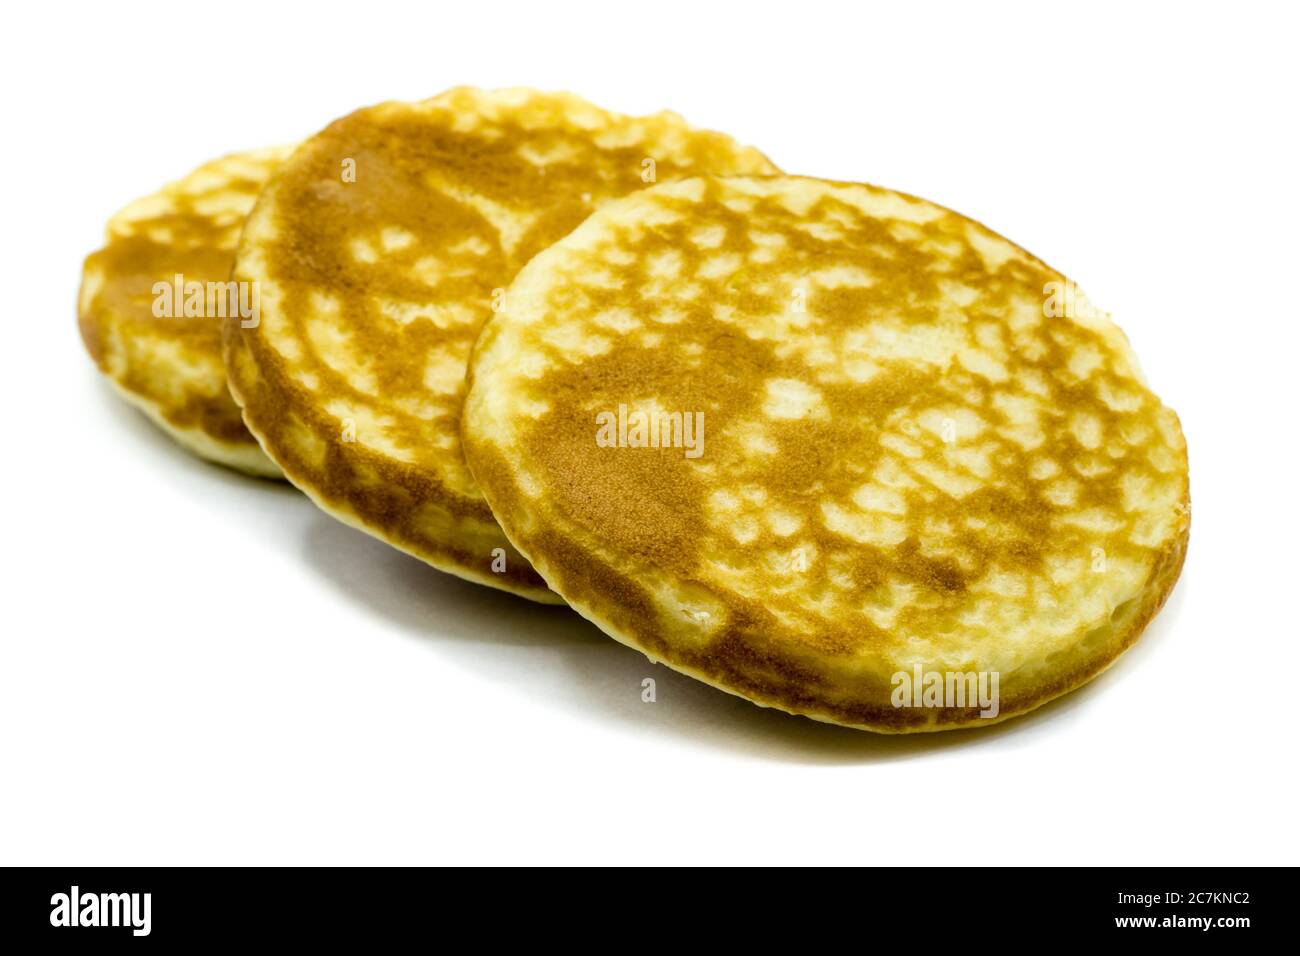 Pancakes isolated on white background Stock Photo